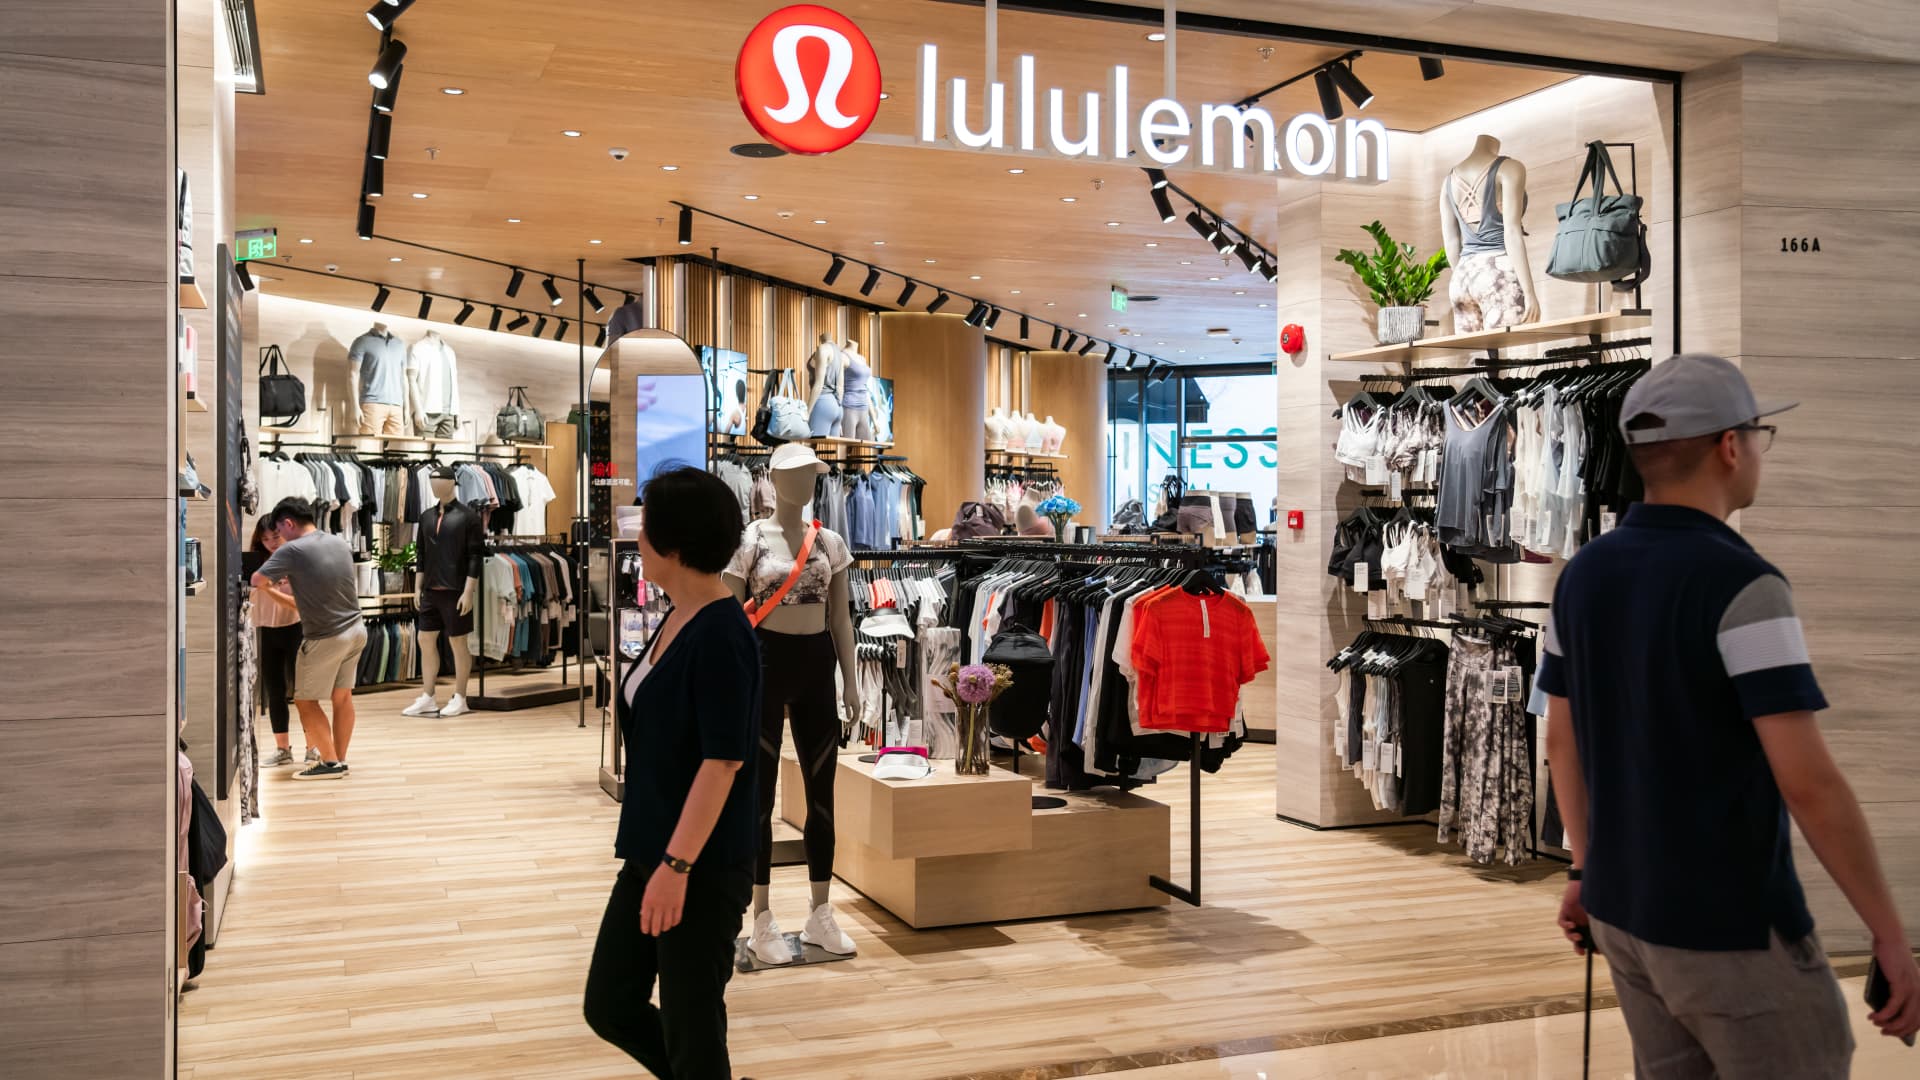 Lululemon (LULU) Q1 2022 earnings beat estimates